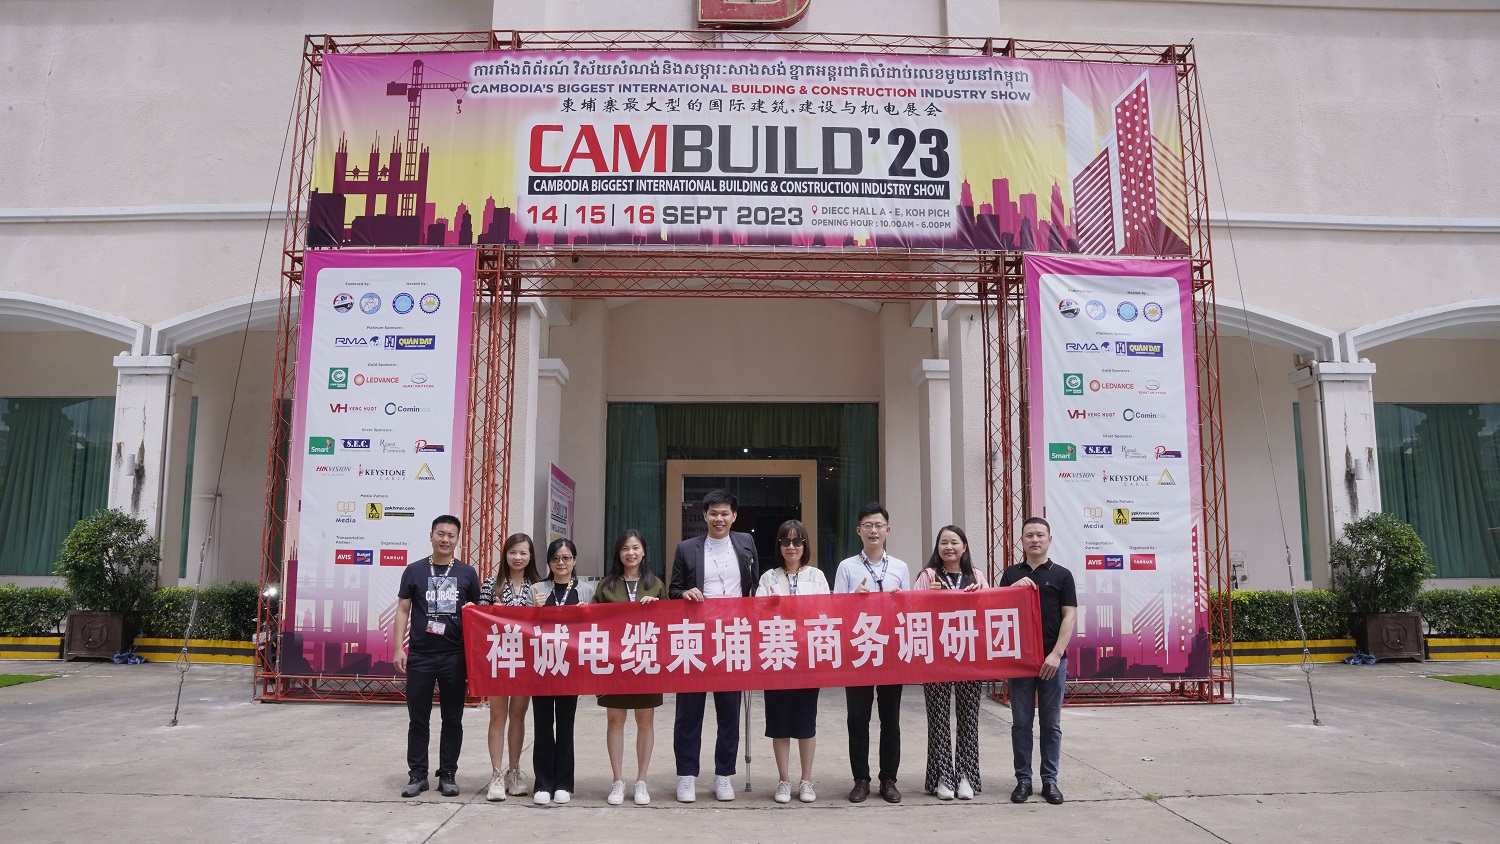 丝瓜sigua55com公司亮相柬埔寨国际建筑建材展览会——CAMBUILD 2023！